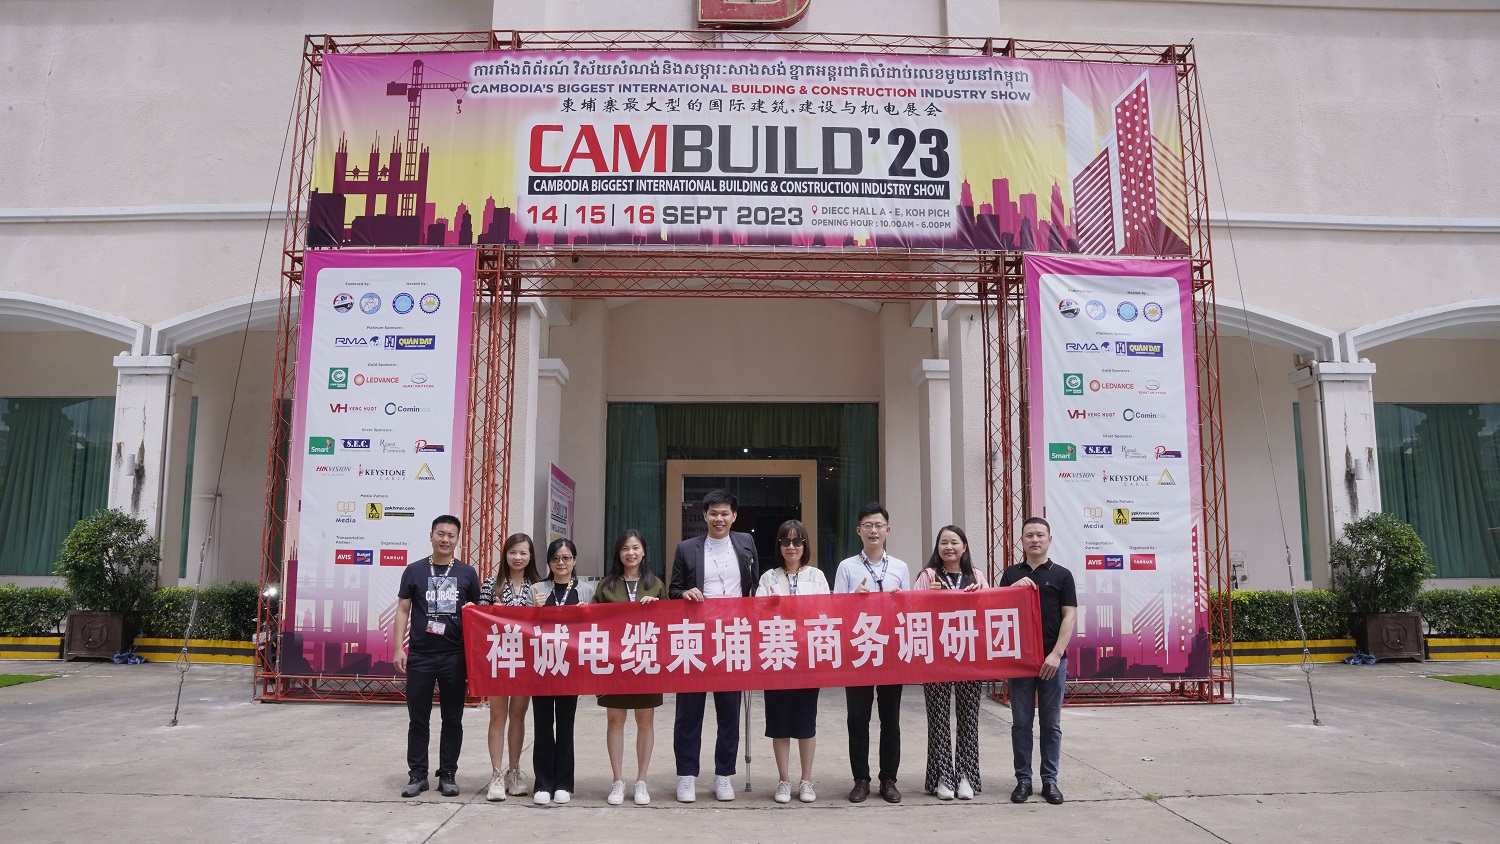 丝瓜sigua55com公司亮相柬埔寨国际建筑建材展览会——CAMBUILD 2023！